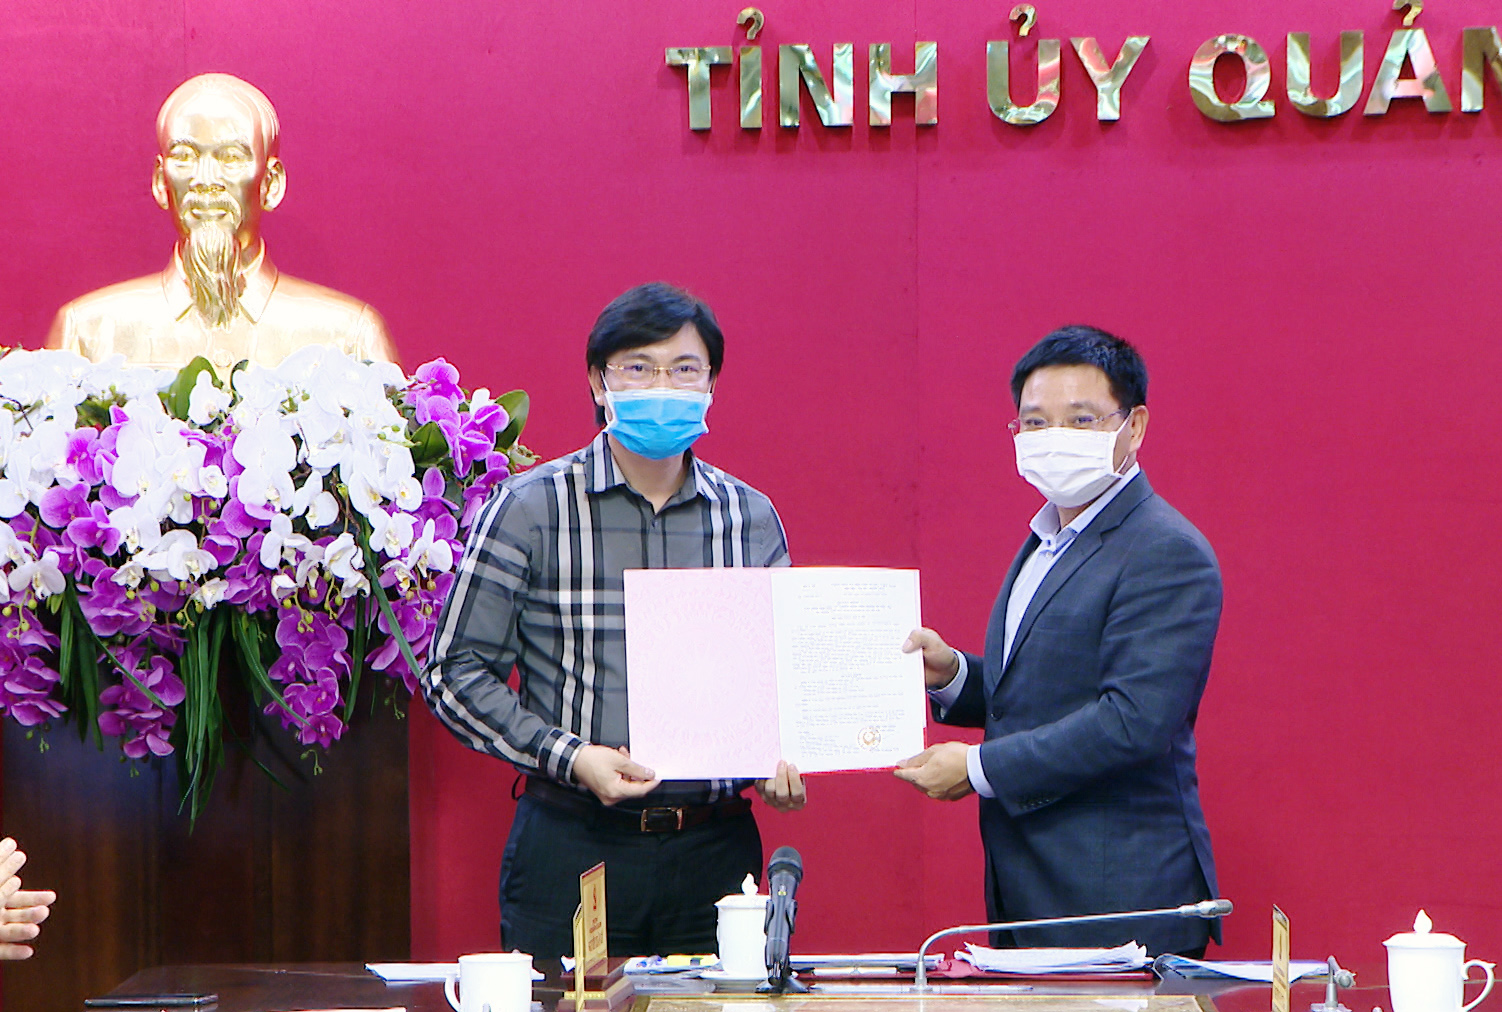 Thừa ủy quyền của Bộ Y tế, đồng chí Nguyễn Văn Thắng, Chủ tịch UBND tỉnh đã trao quyết định của Bộ Y tế cho Sở Y tế tỉnh Quảng Ninh về việc cho phép Trung tâm Kiểm soát bệnh tật tỉnh thực hiện xét nghiệm dịch bệnh Covid-19.